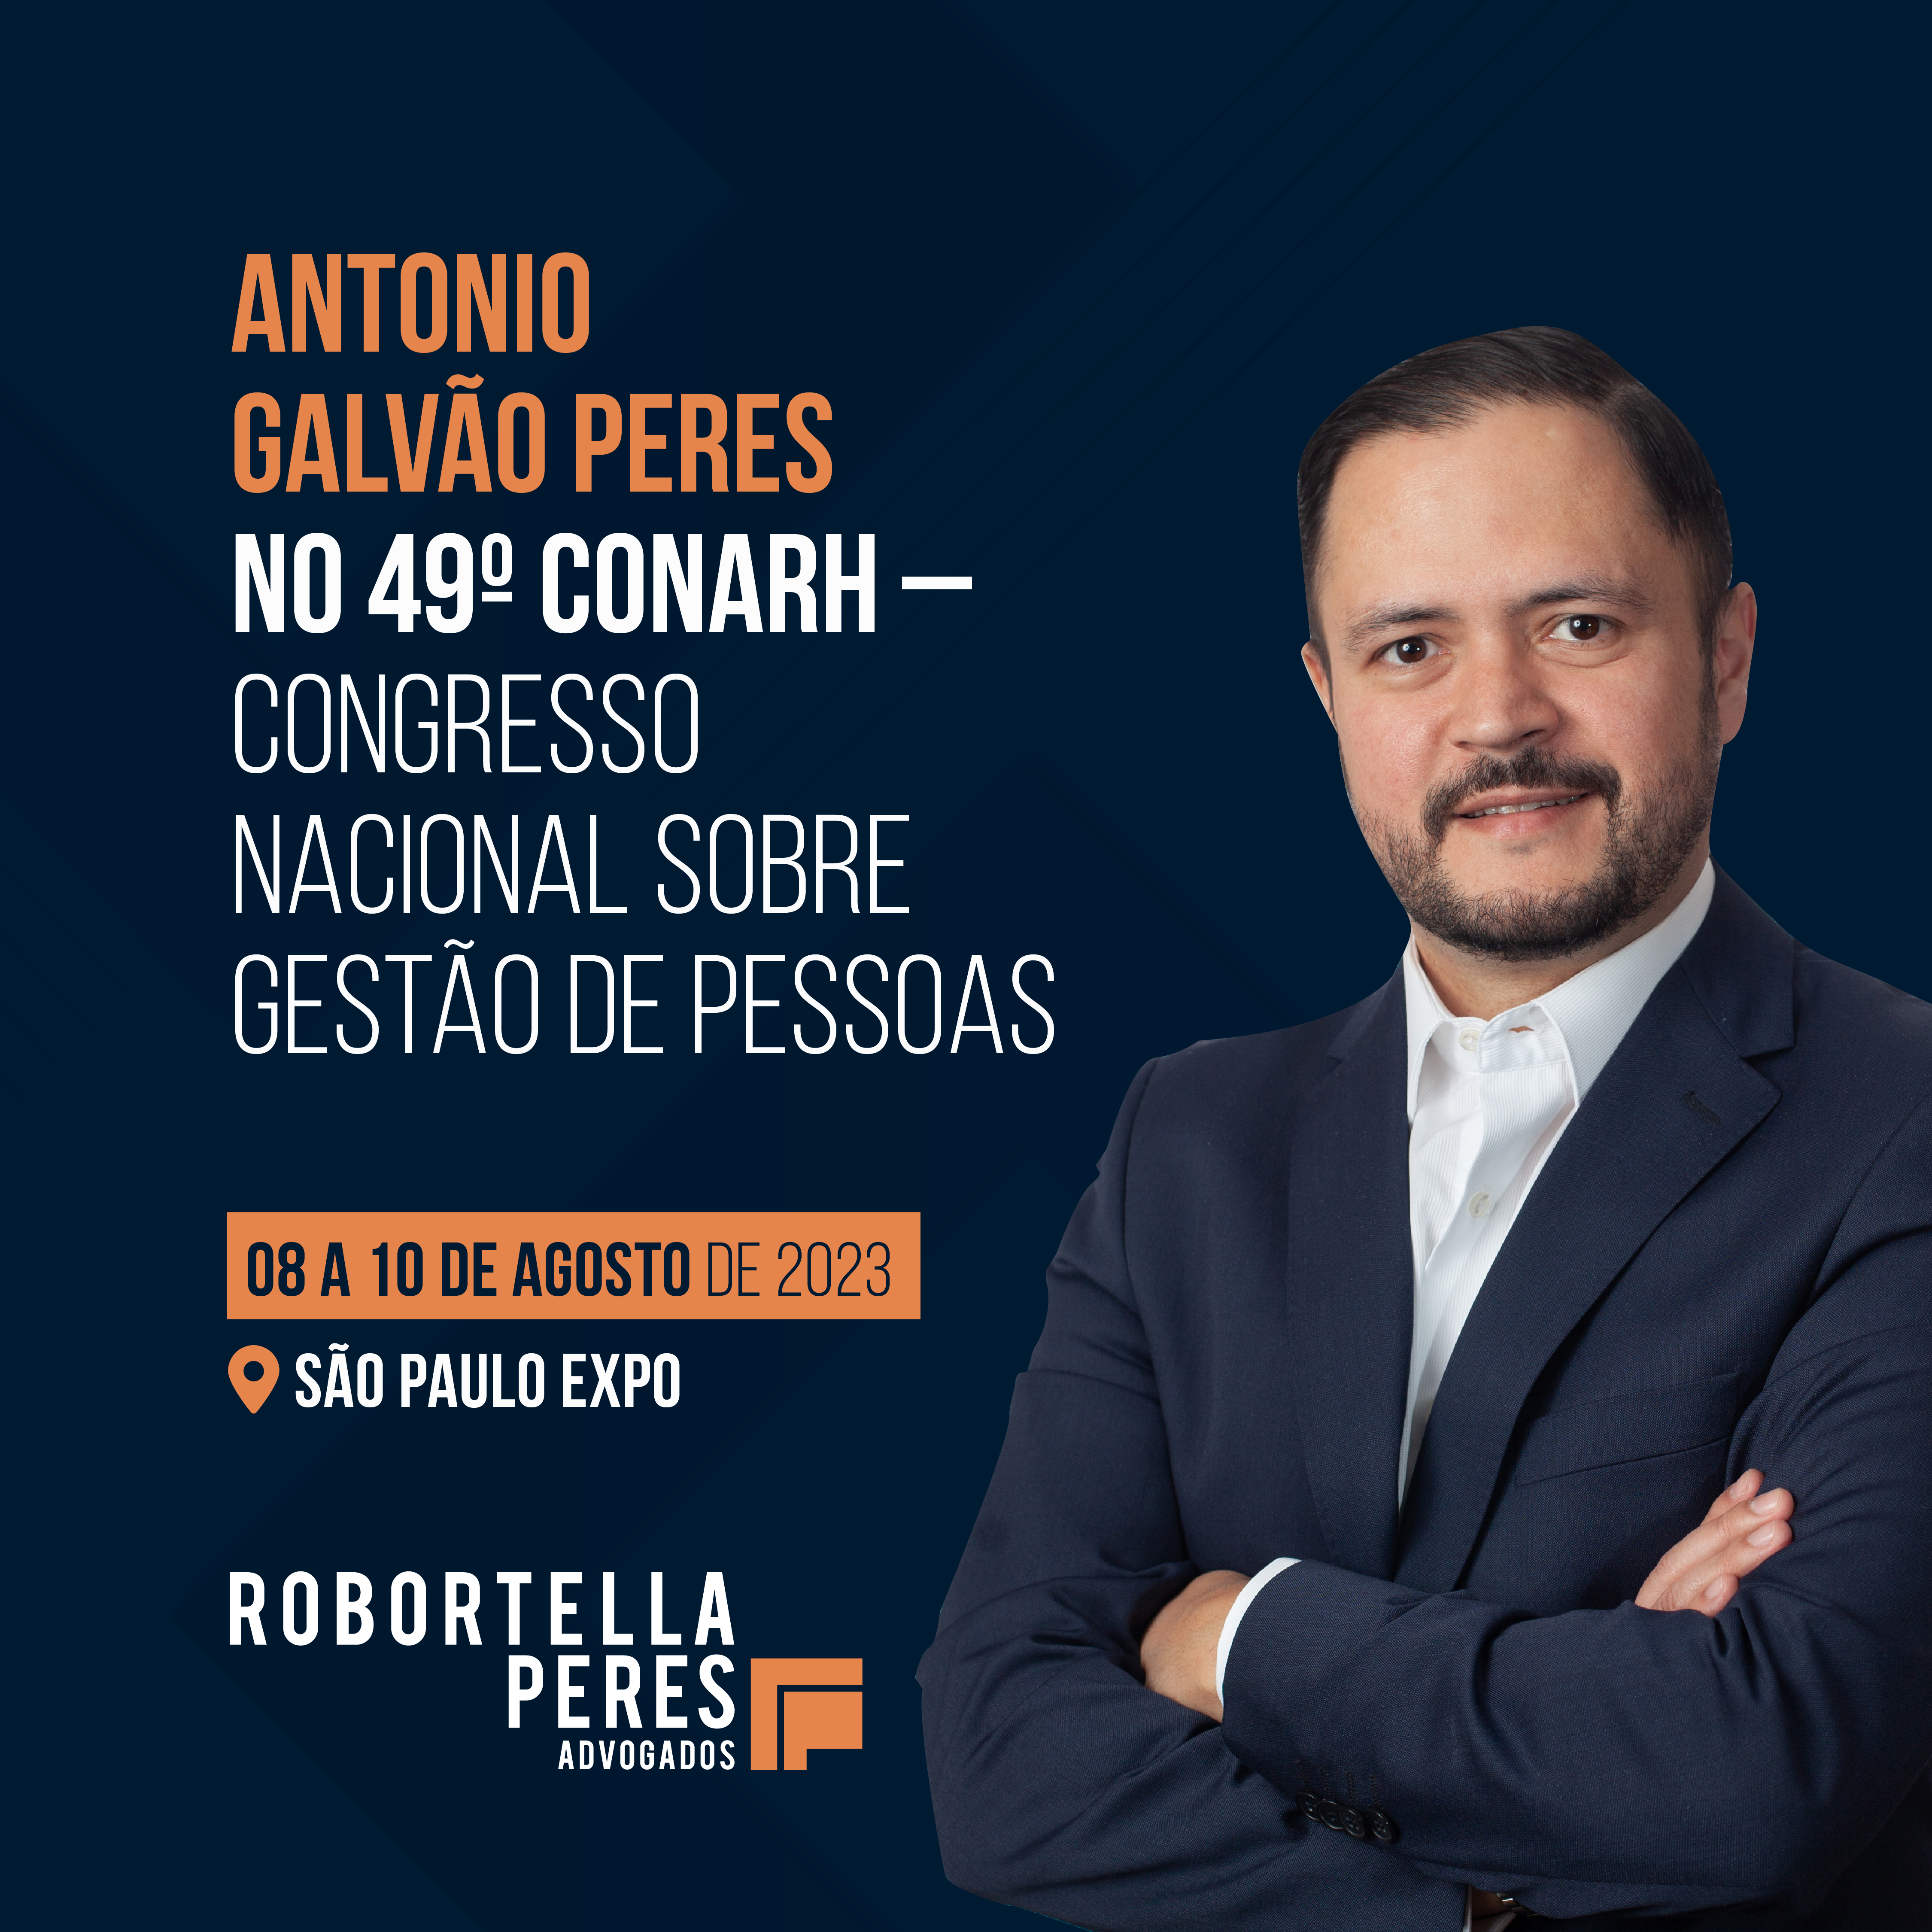 Antonio Galvão Peres no 49º CONARH – Congresso Nacional sobre Gestão de Pessoas